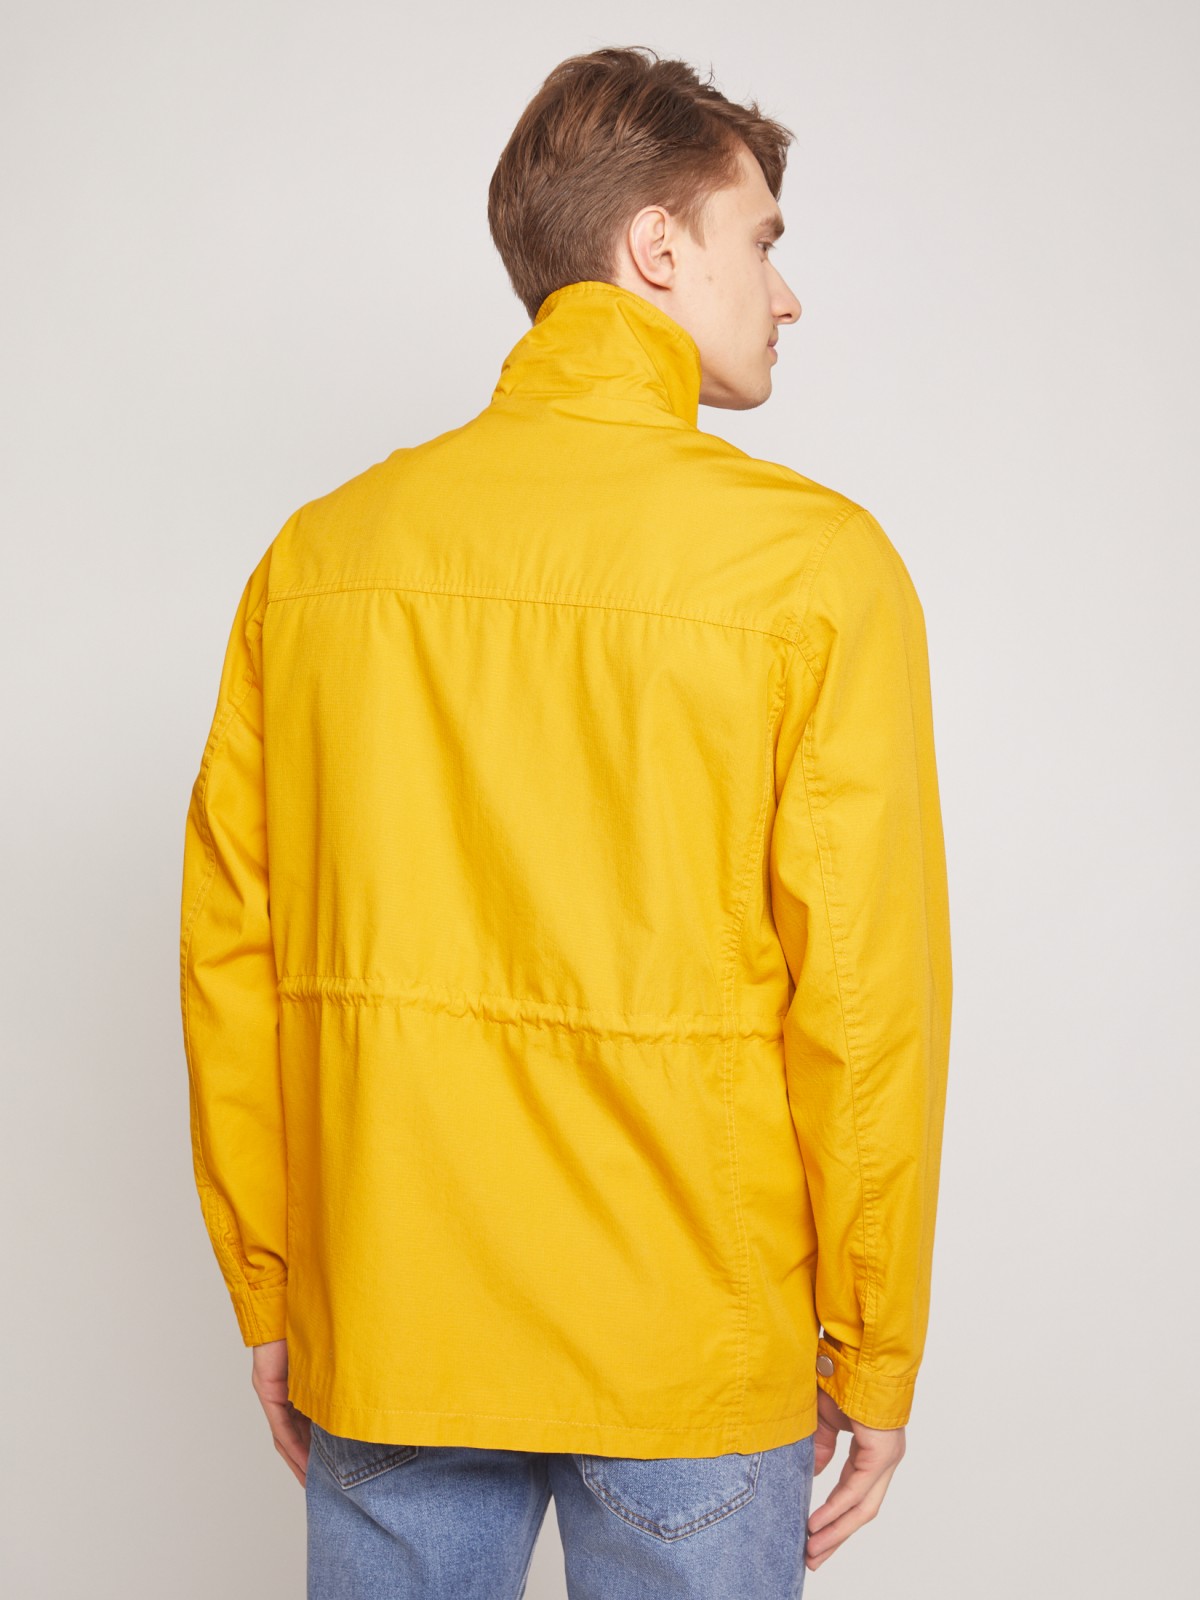 Куртка-ветровка zolla 01121560L164, цвет желтый, размер M - фото 5